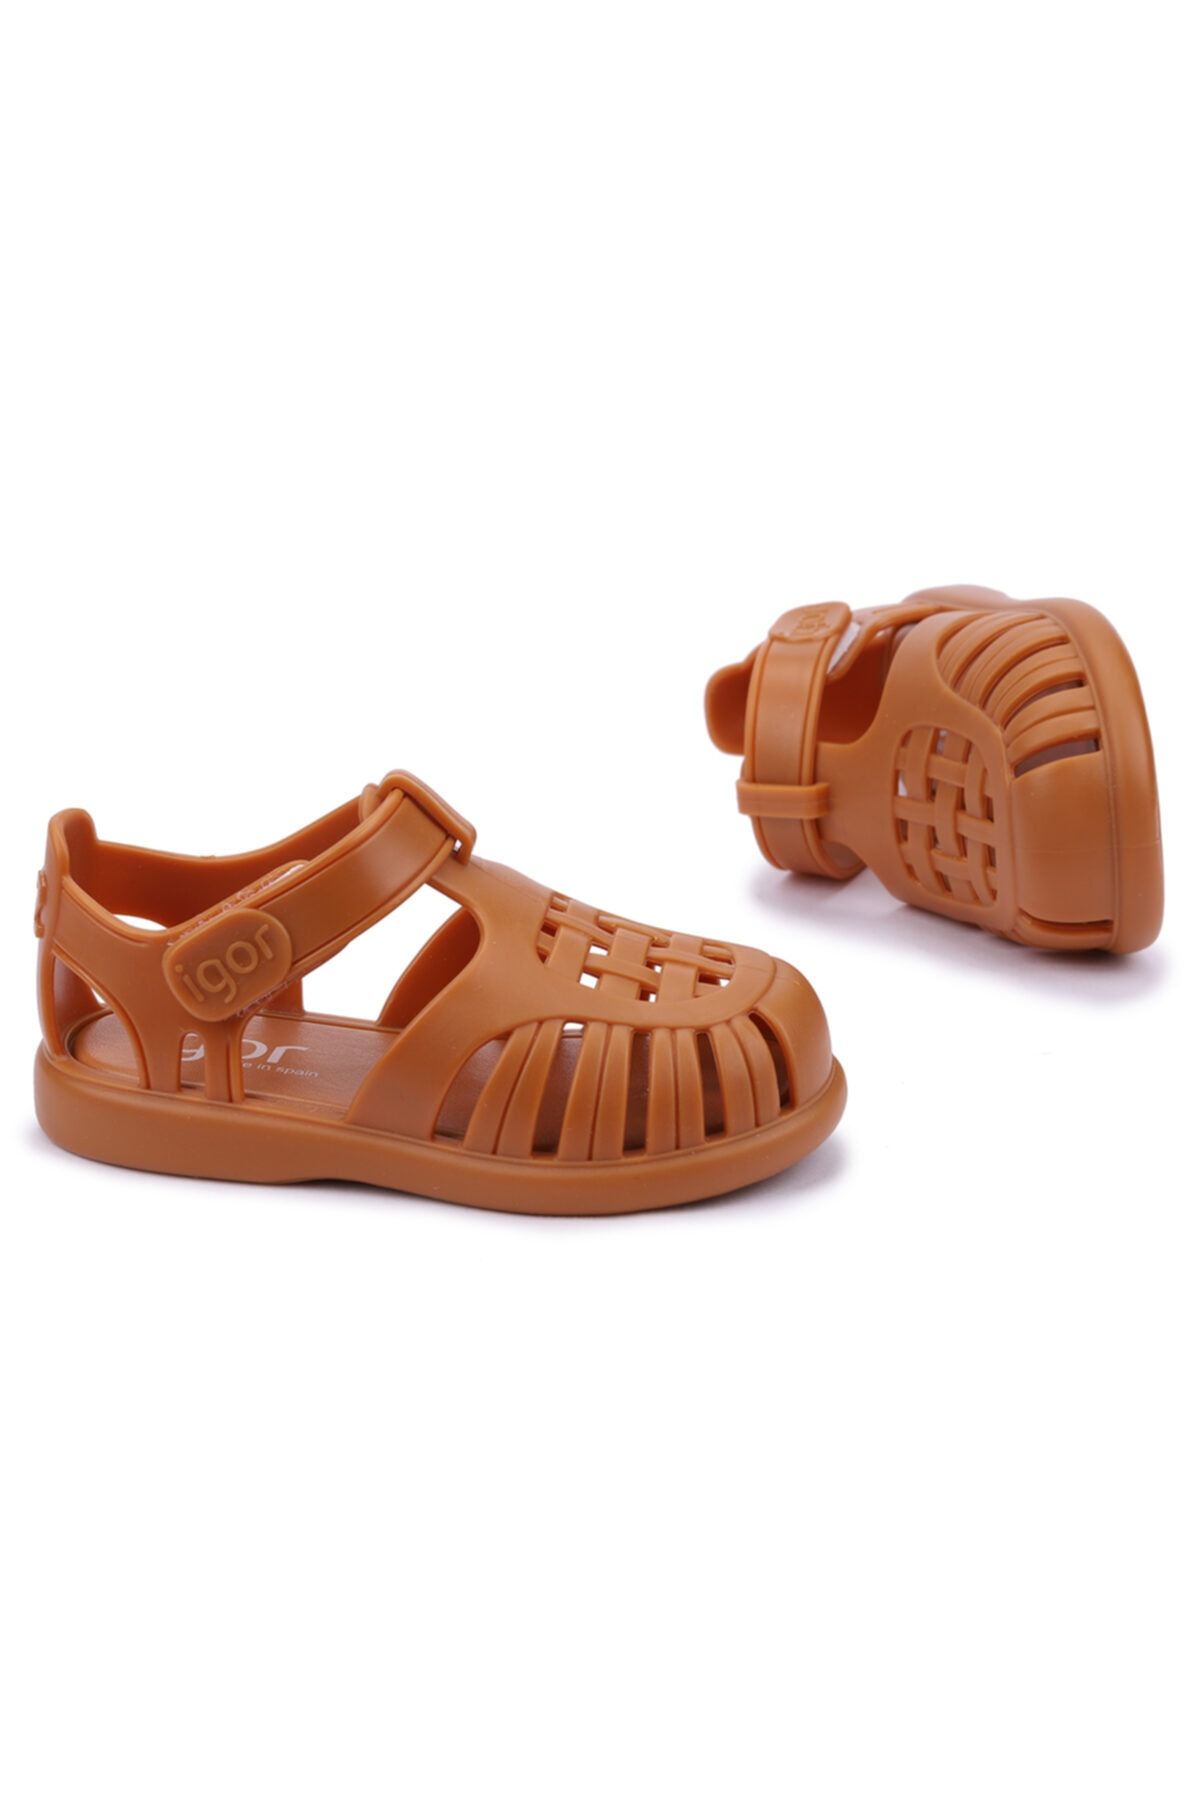 IGOR S10271 Tobby Solid Kız/erkek Çocuk Sandalet Ayakkabı